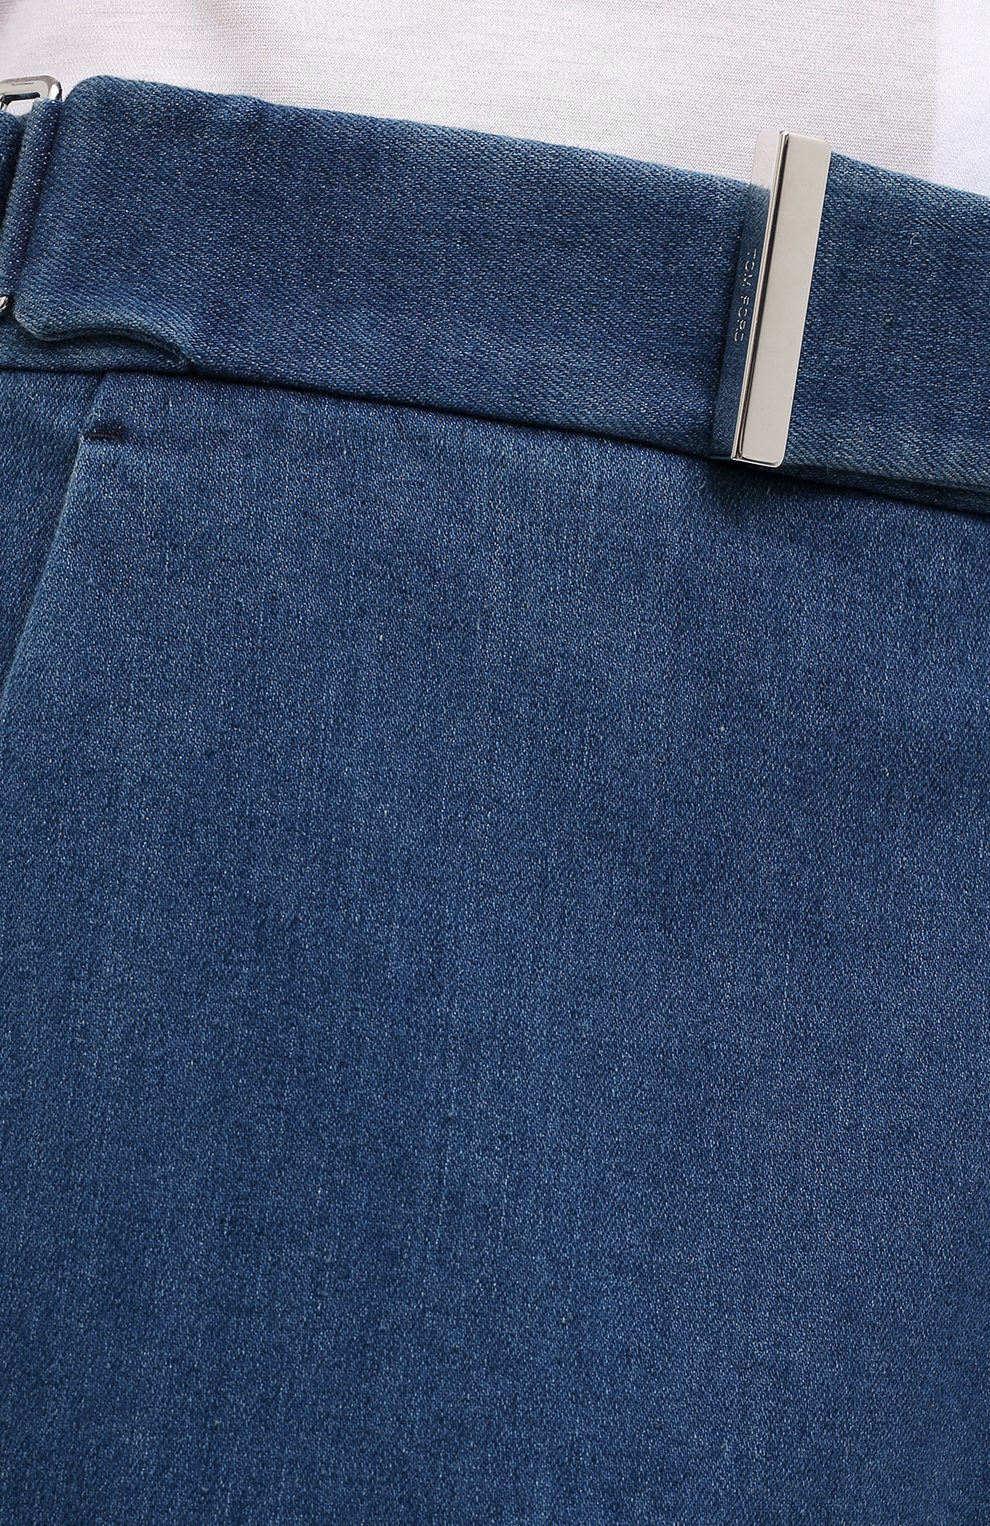 Мужские синие джинсовые брюки TOM FORD купить в интернет-магазине ЦУМ, арт.874R11/778J42